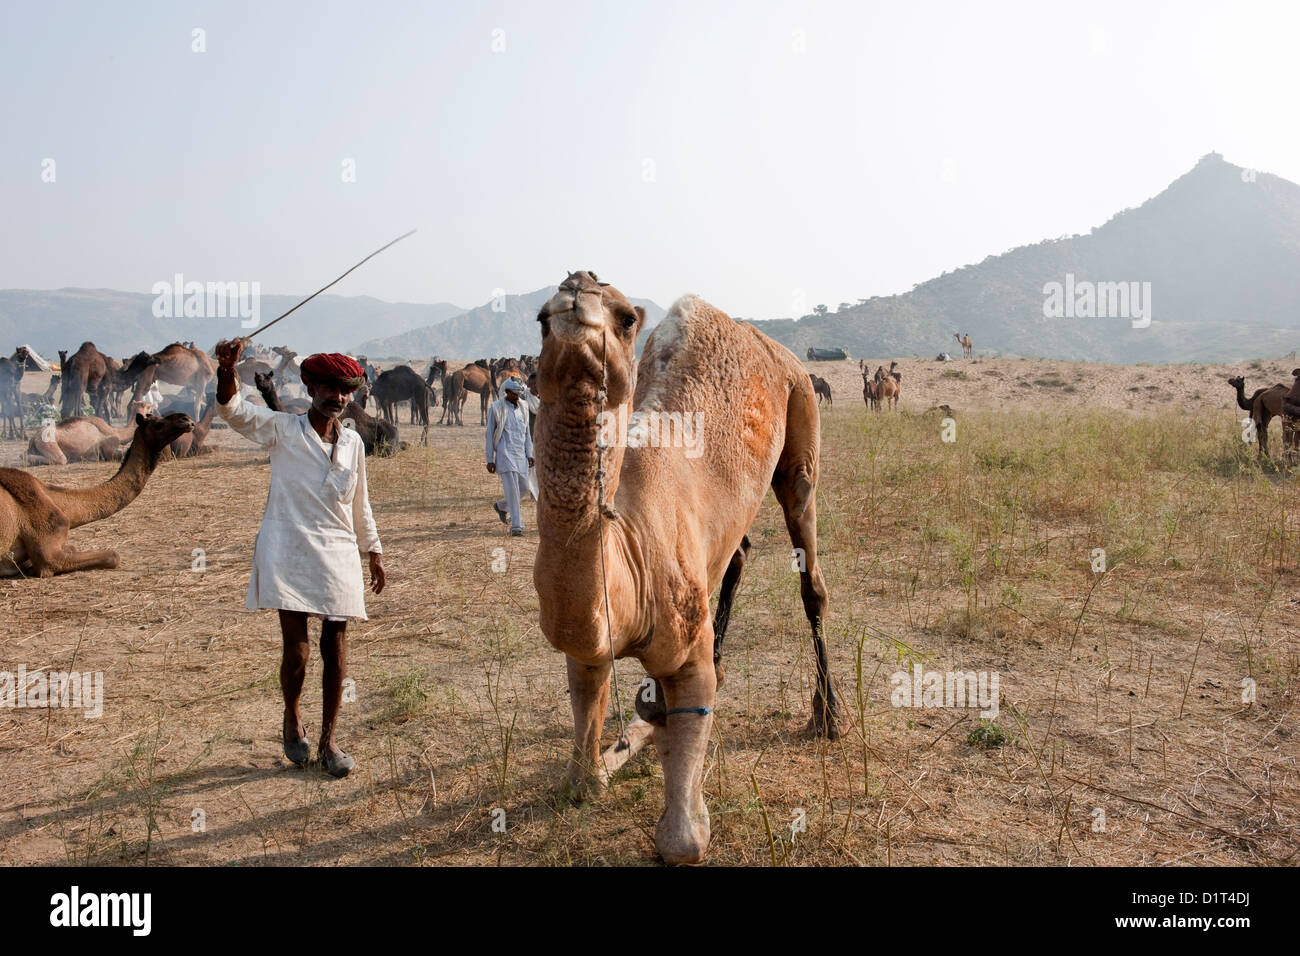 Ein Kamel Rajasthani Handel in einer roten Turbanr bildet ein Kamel in der Wüste bei der Messe in Rajasthan in Indien Pushkar Camel sitzen Stockfoto